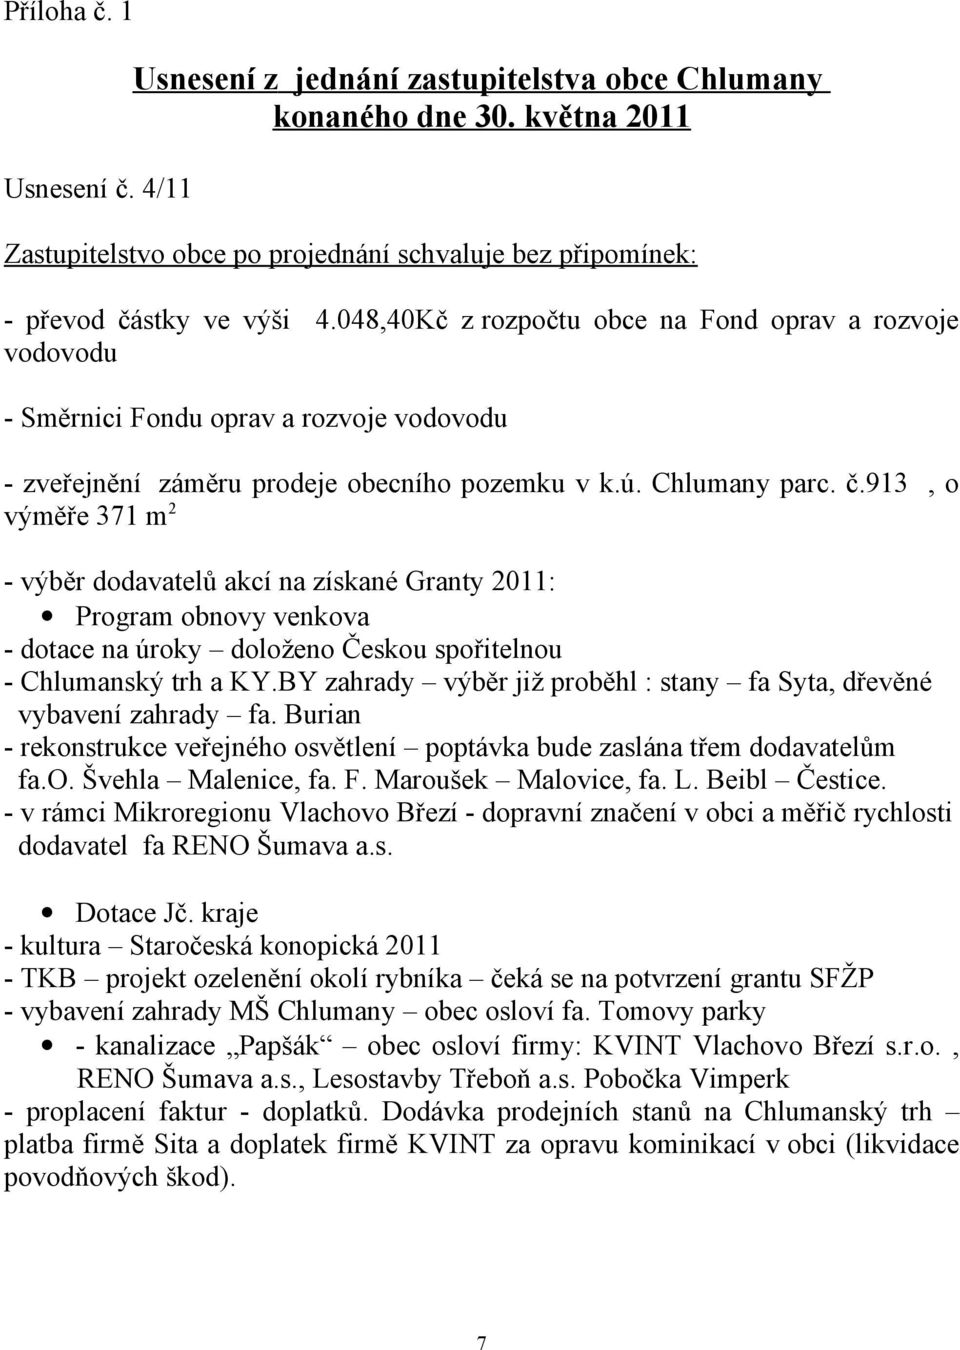 913, o výměře 371 m 2 - výběr dodavatelů akcí na získané Granty 2011: Program obnovy venkova - dotace na úroky doloženo Českou spořitelnou - Chlumanský trh a KY.